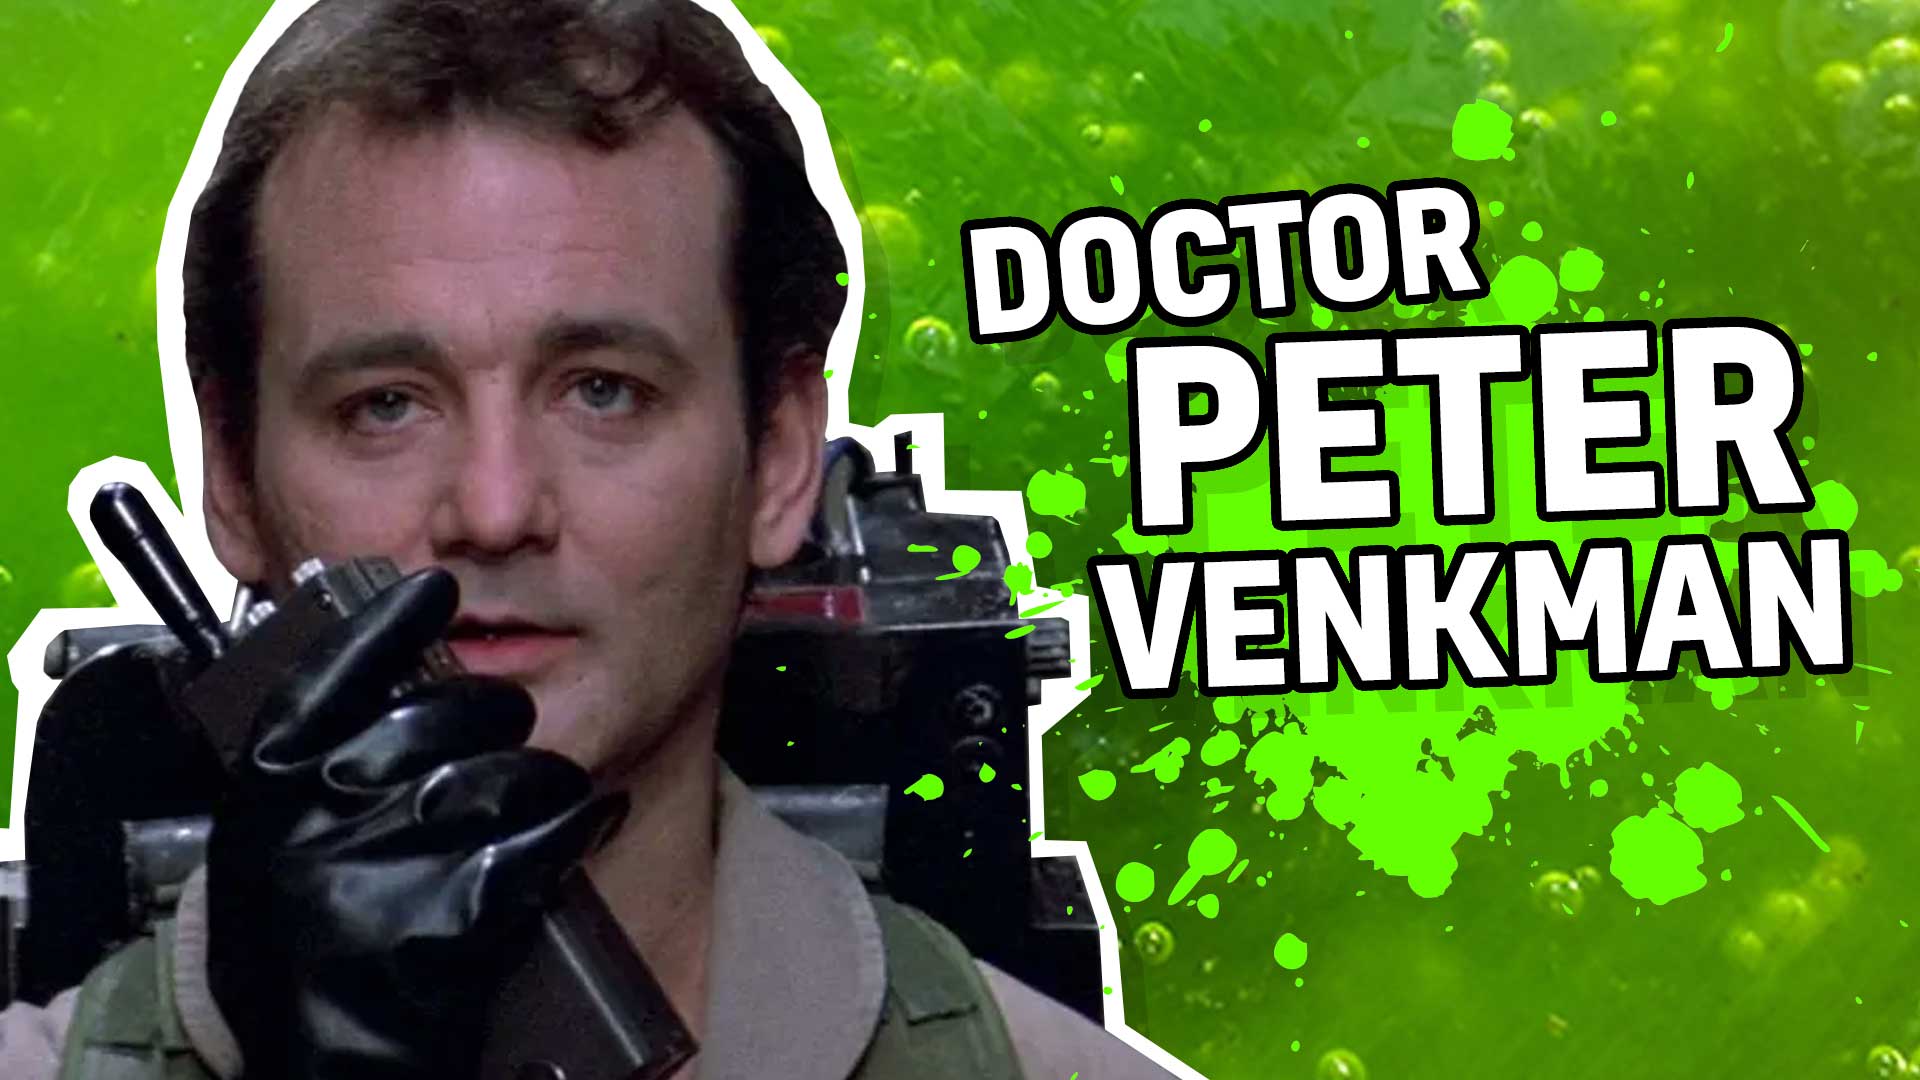 Result: Doctor Peter Venkman